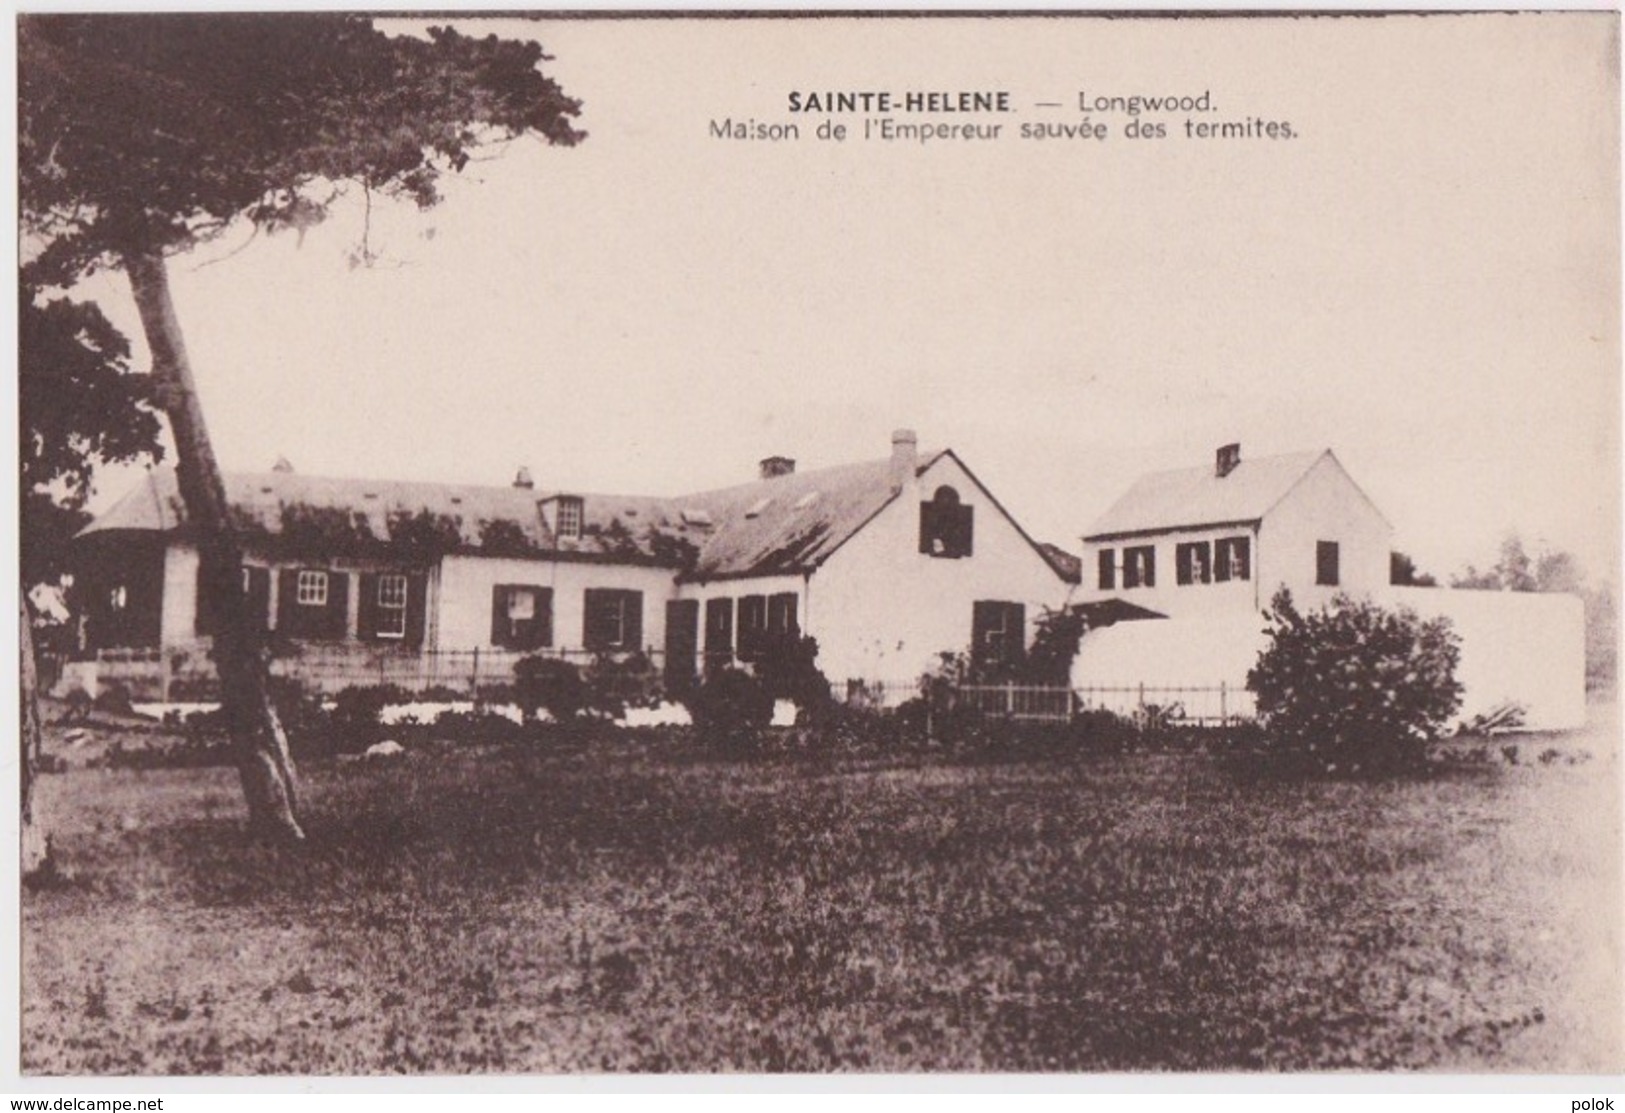 Bx - Cpa SAINTE HELENE - Longwood - Maison De L'Emperuer Napoleon Sauvée Des Termites - Ascension (Ile)